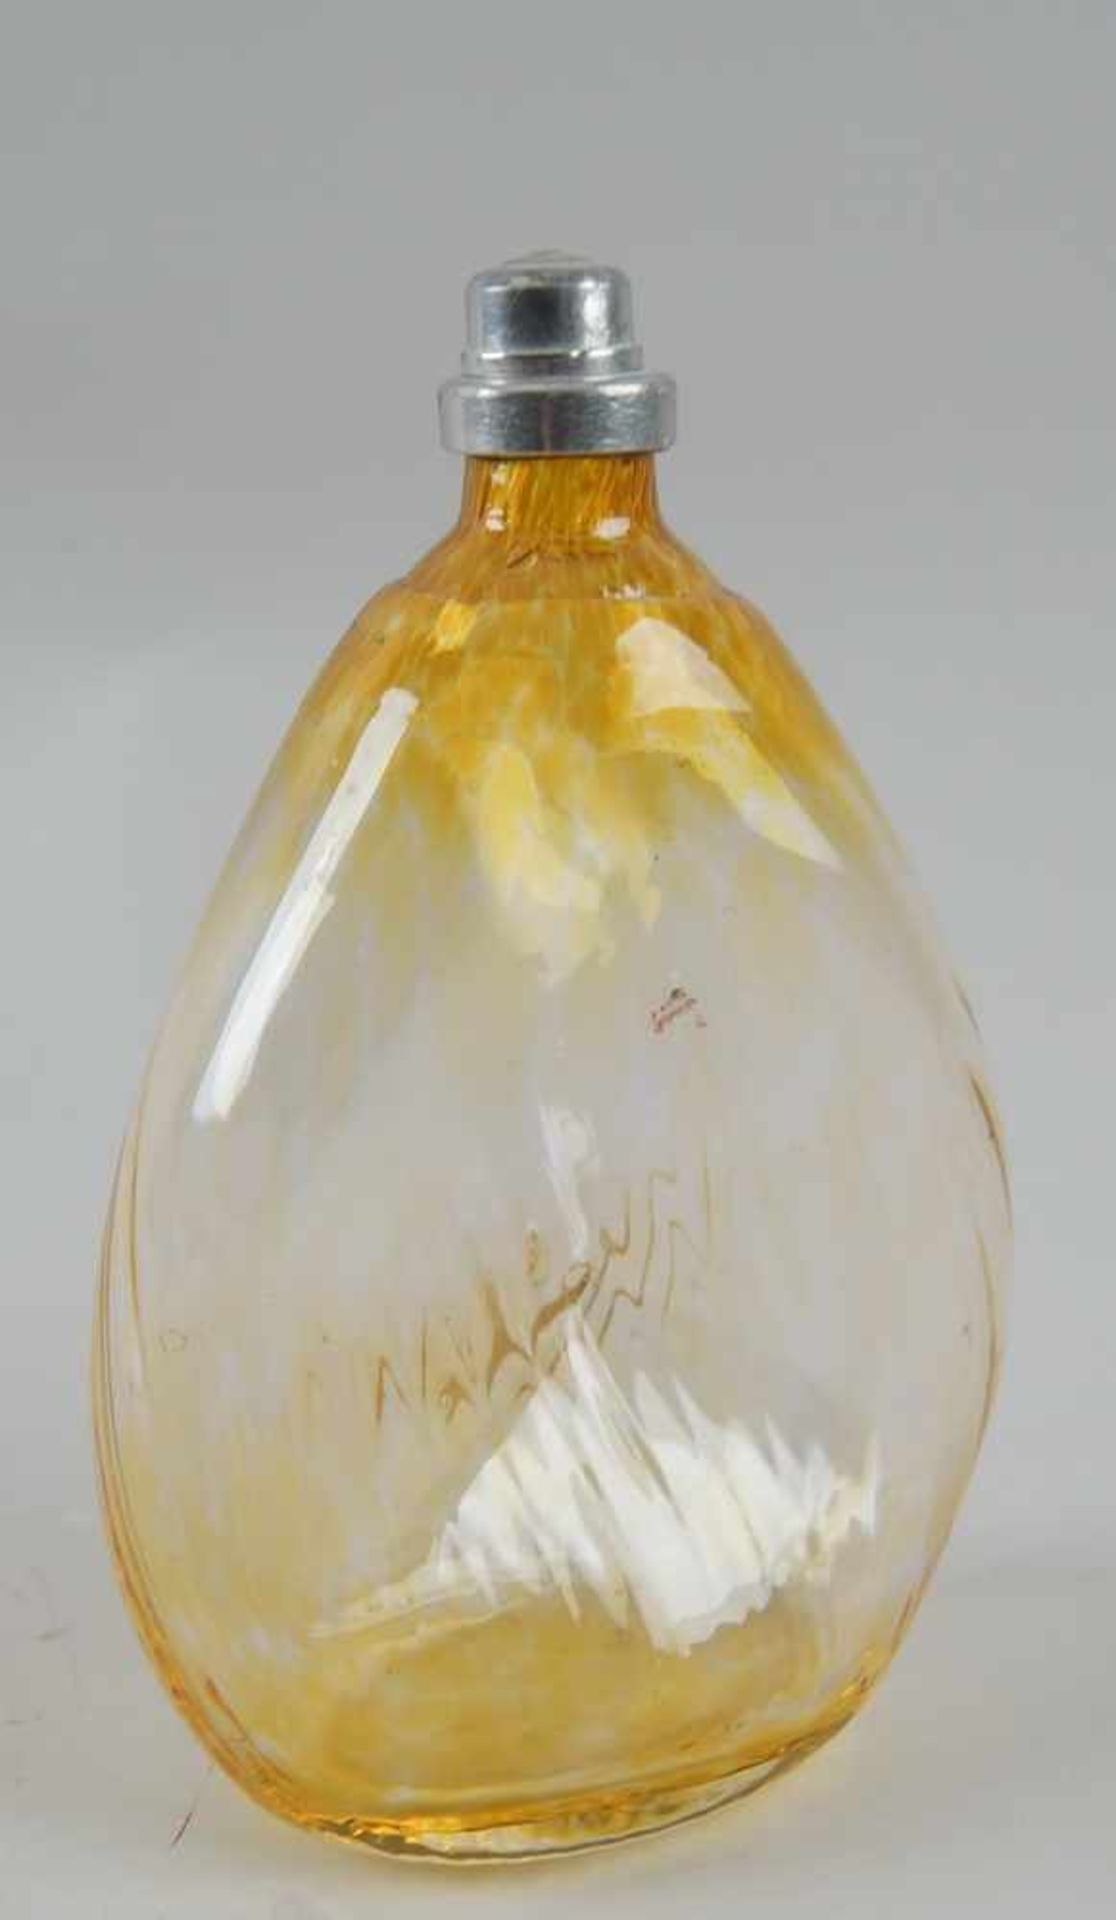 Gramsacher Nabelflasche, Tirol, ~ 1900, gelbliches Glas, H 18 cm